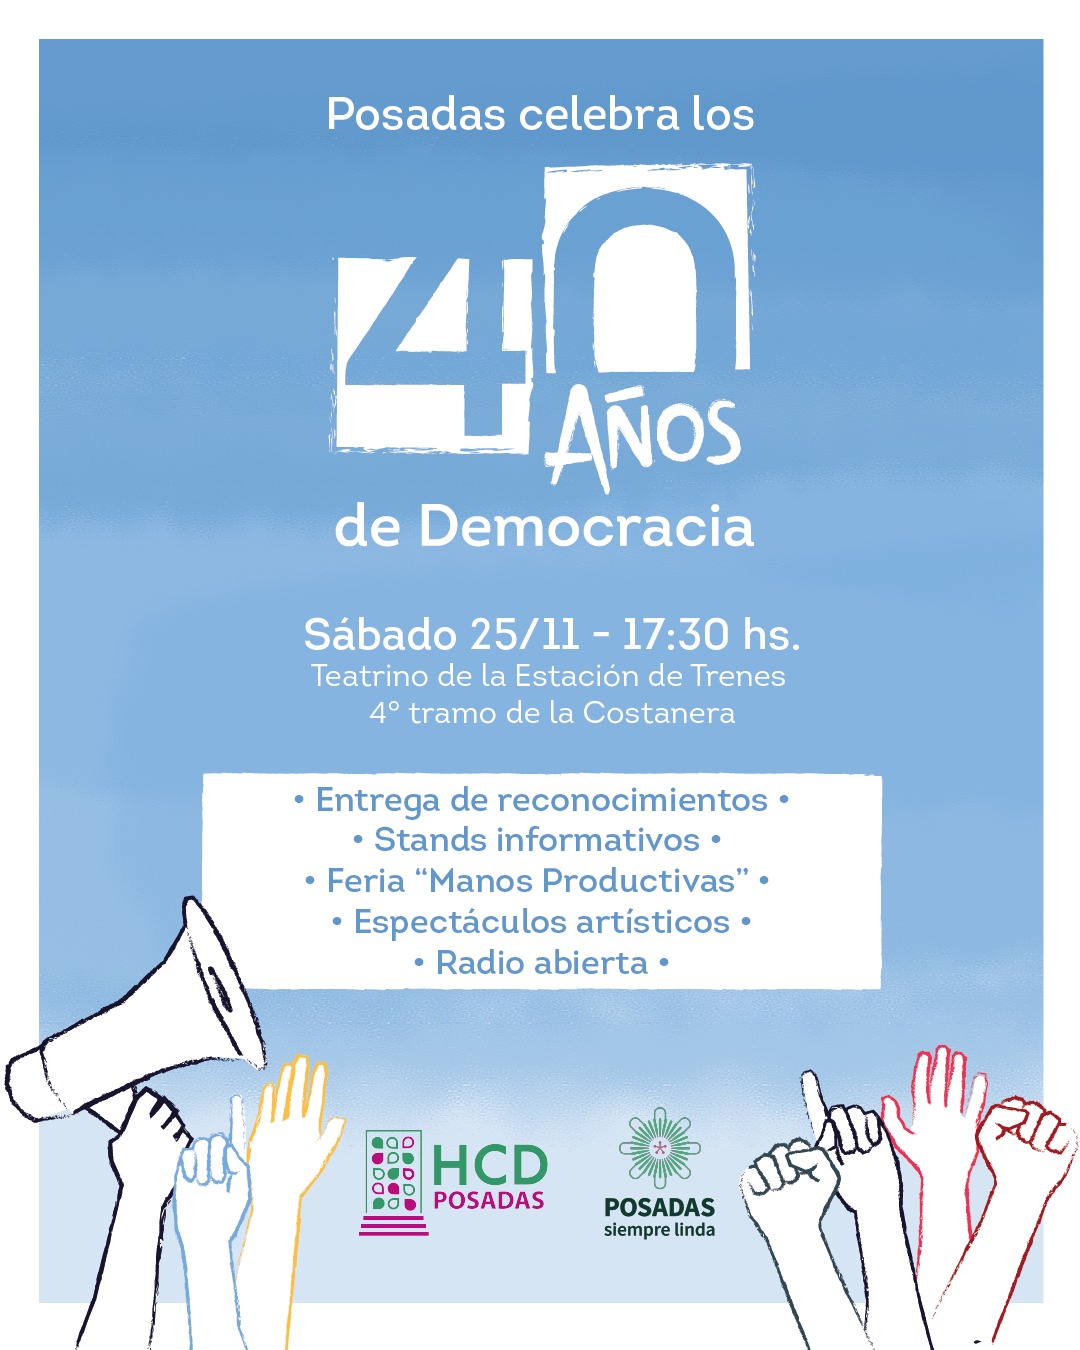 Posadas realizará un encuentro para celebrar los 40 años de Democracia imagen-2